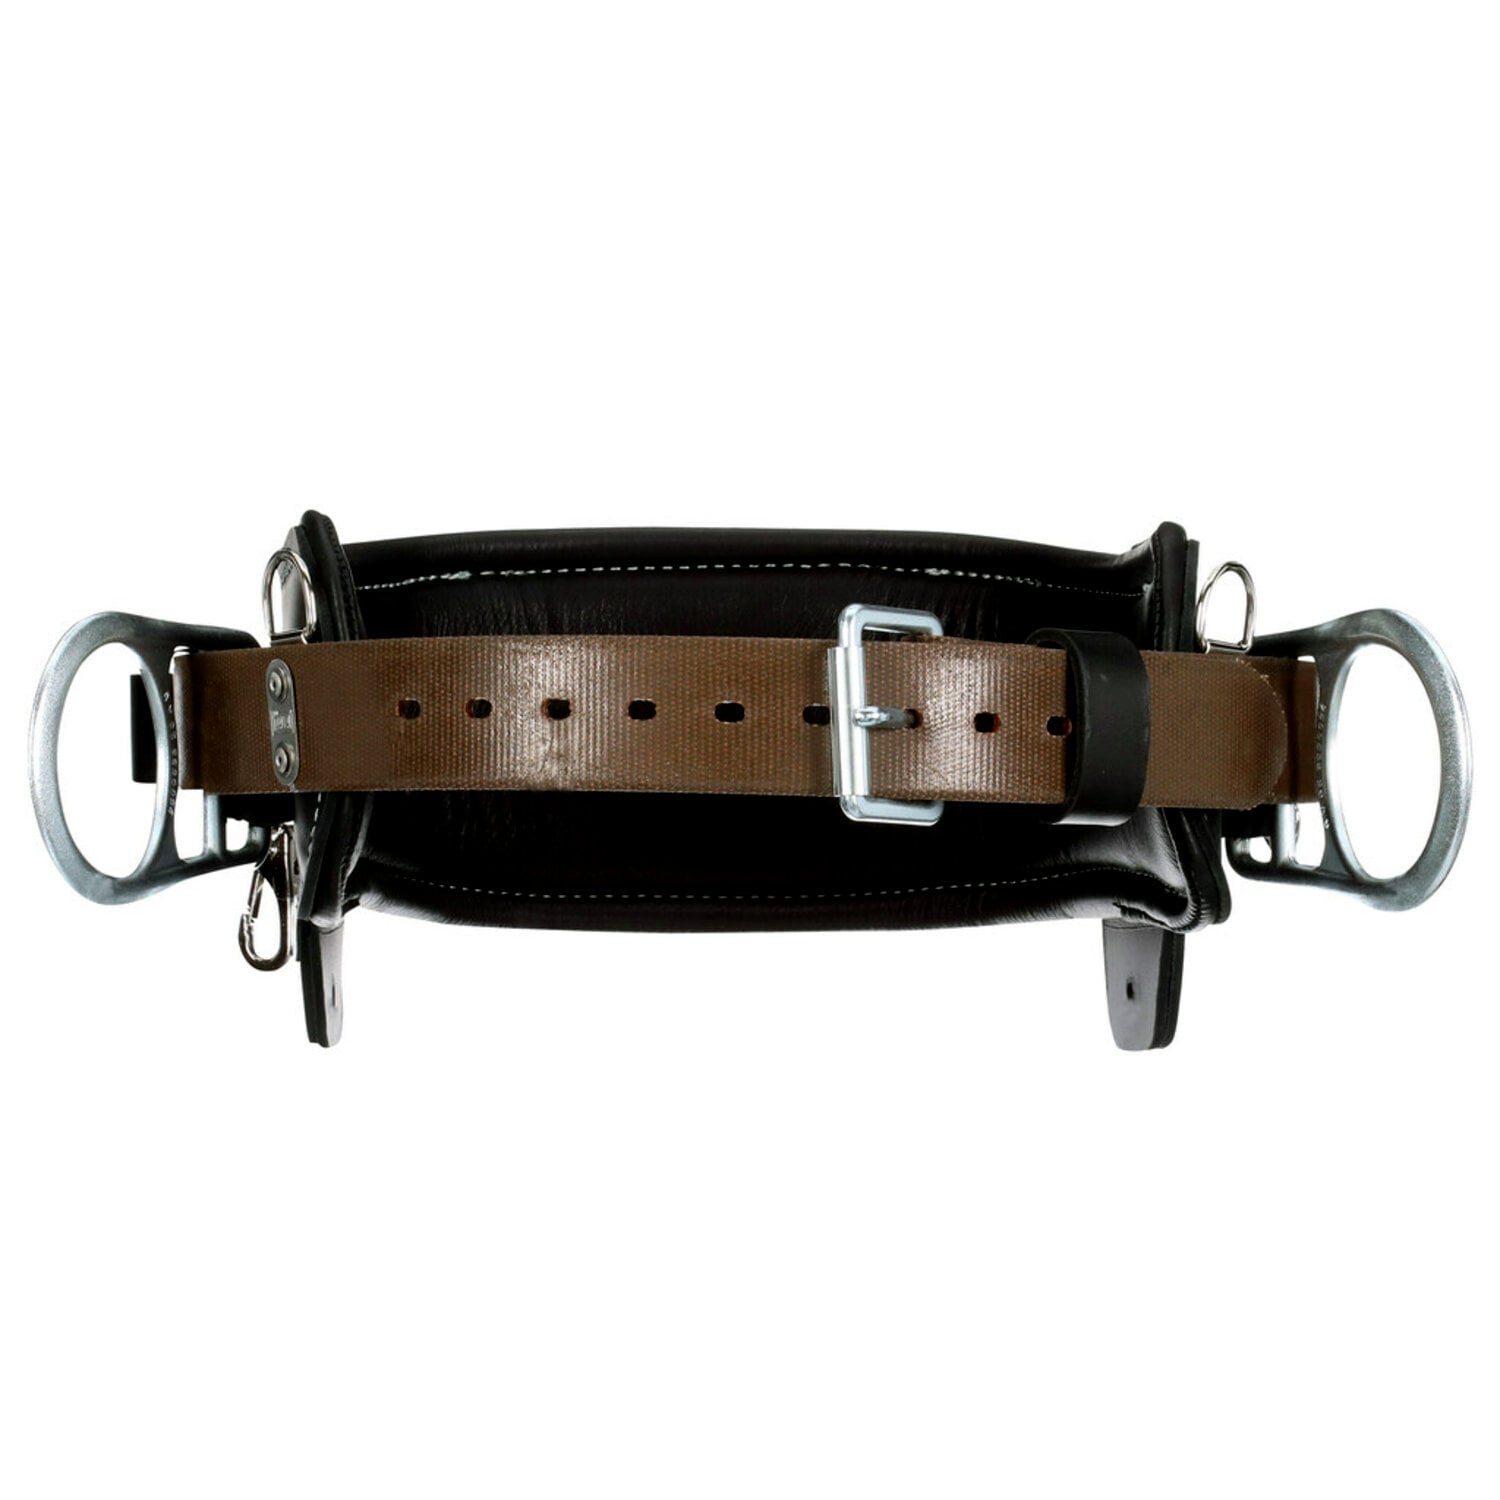 7012815141 - 3M DBI-SALA 2D Lineman Tongue Buckle Positioning Belt 1003247, Leather, Black, D25